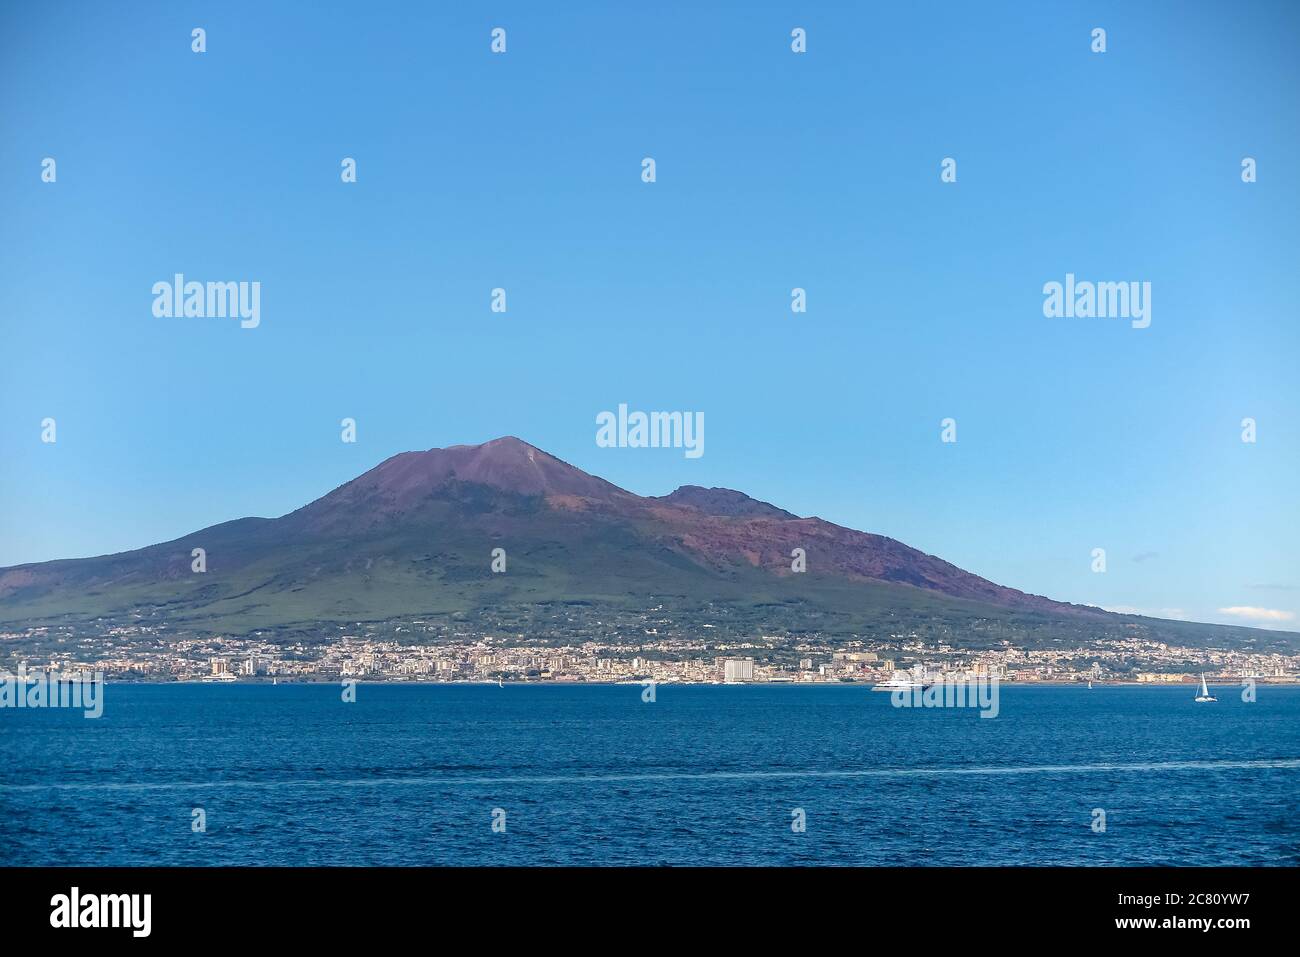 Vista panoramica sul Vesuvio con la città di Napoli e il Mar Mediterraneo, comune di Sorrento, provincia di Napoli, Italia Foto Stock